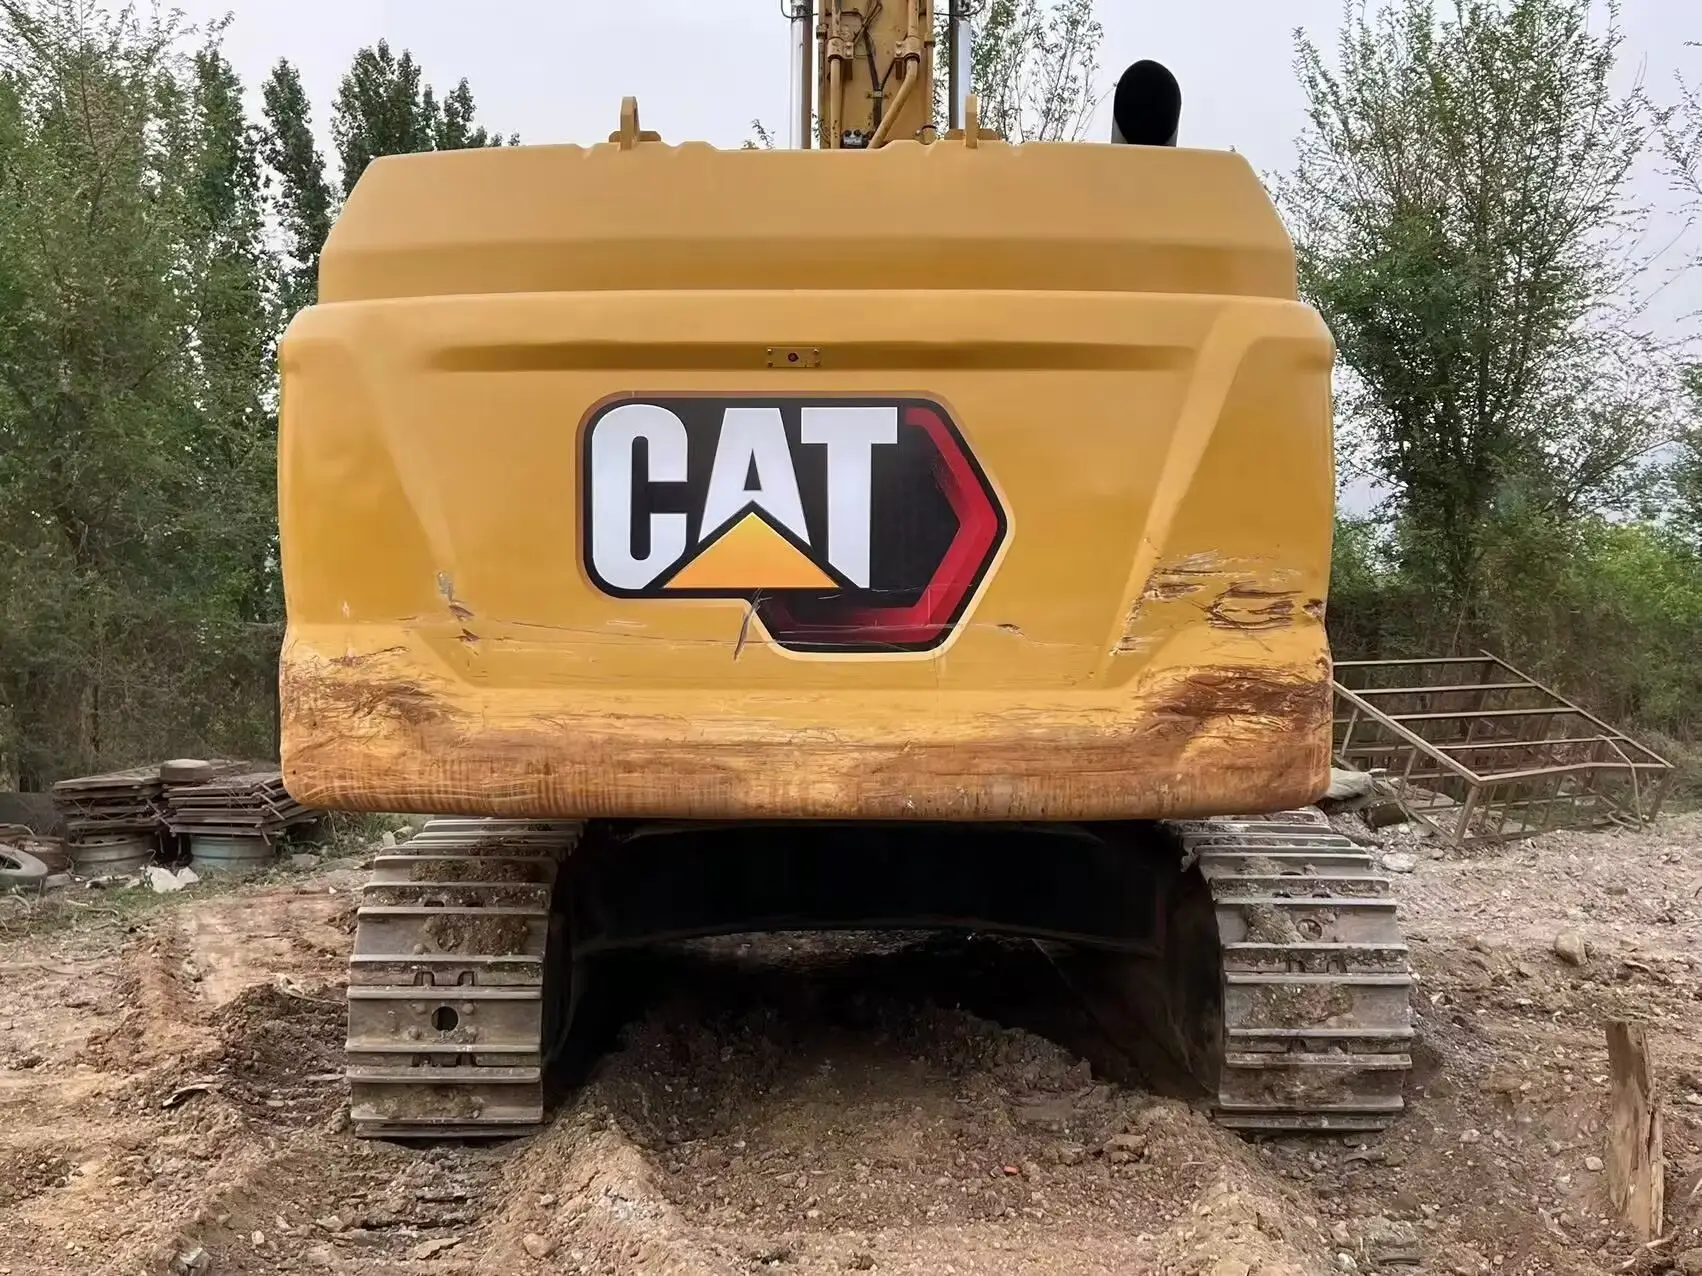 Escavatore per gatti usato 349 usato per cingolo da 50 tonnellate di minerale di scavo idraulico cingolato escavatore grande